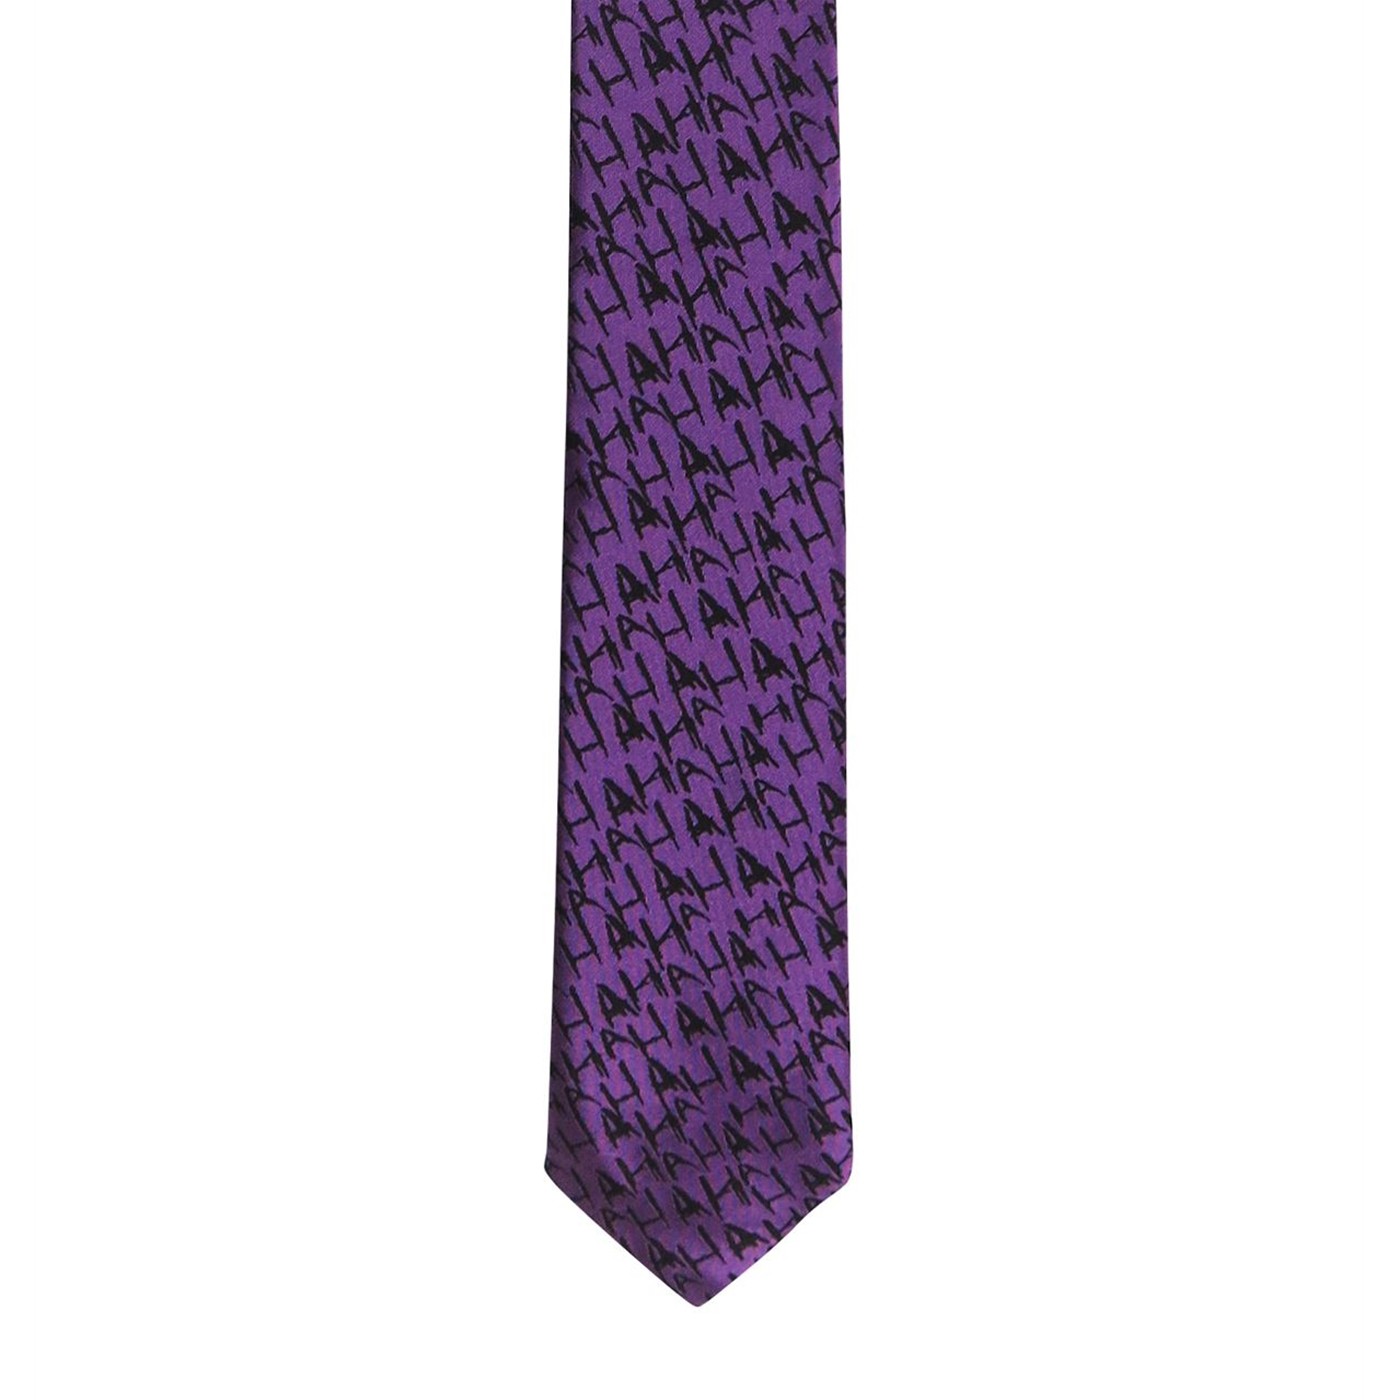 The Joker Micro Print Men's Neck Tie